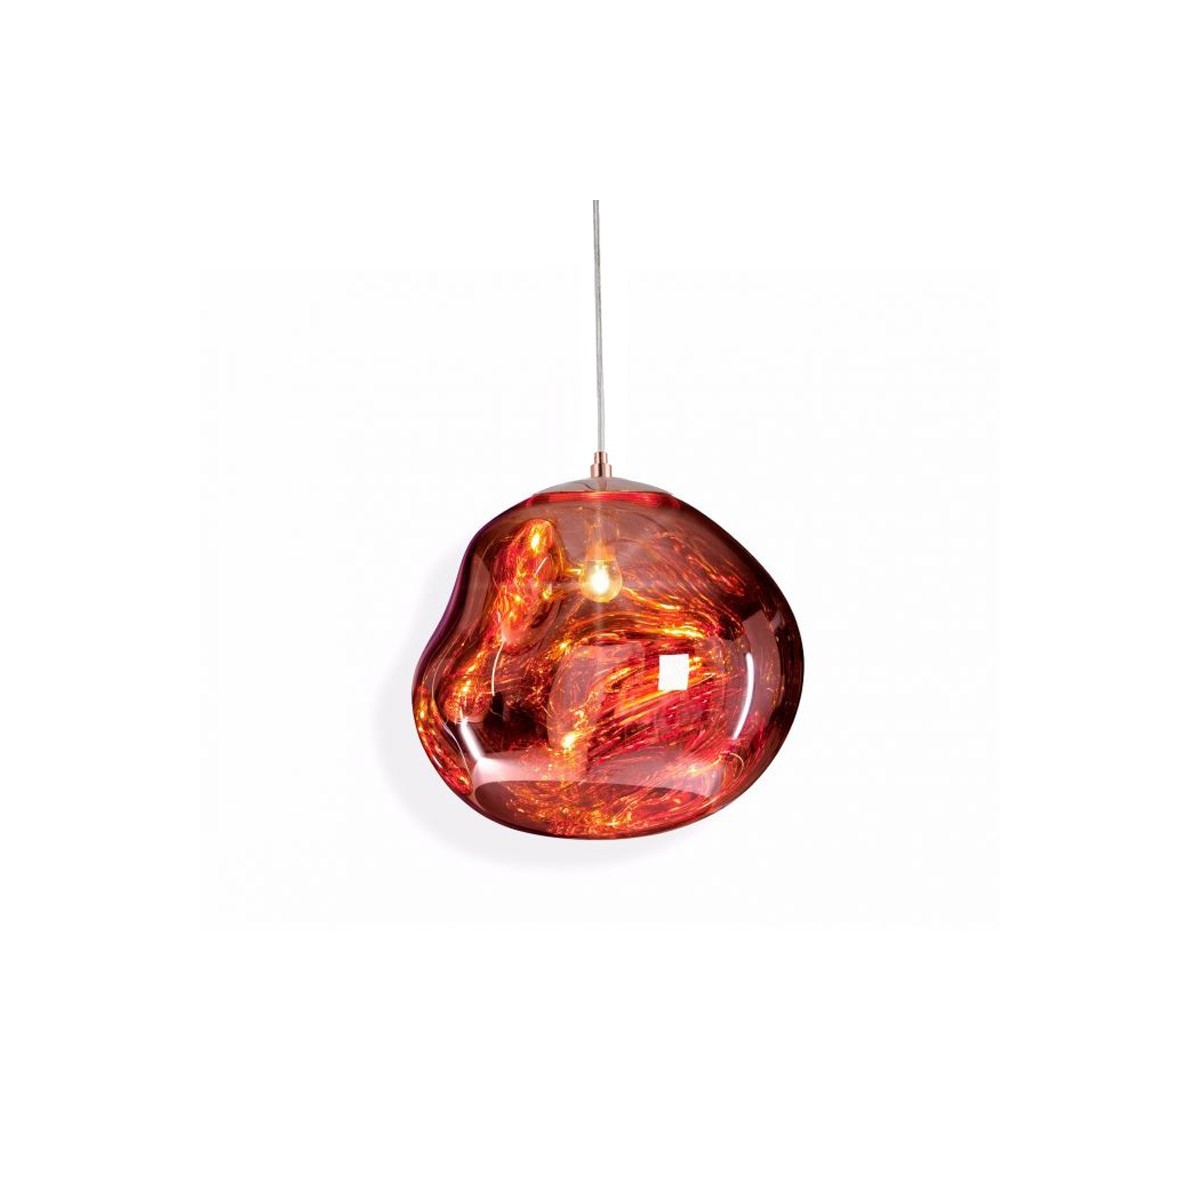 Designer Hängeleuchte „Abril“ aus Glas - E27 Tom Dixon Inspiration - Kupfer